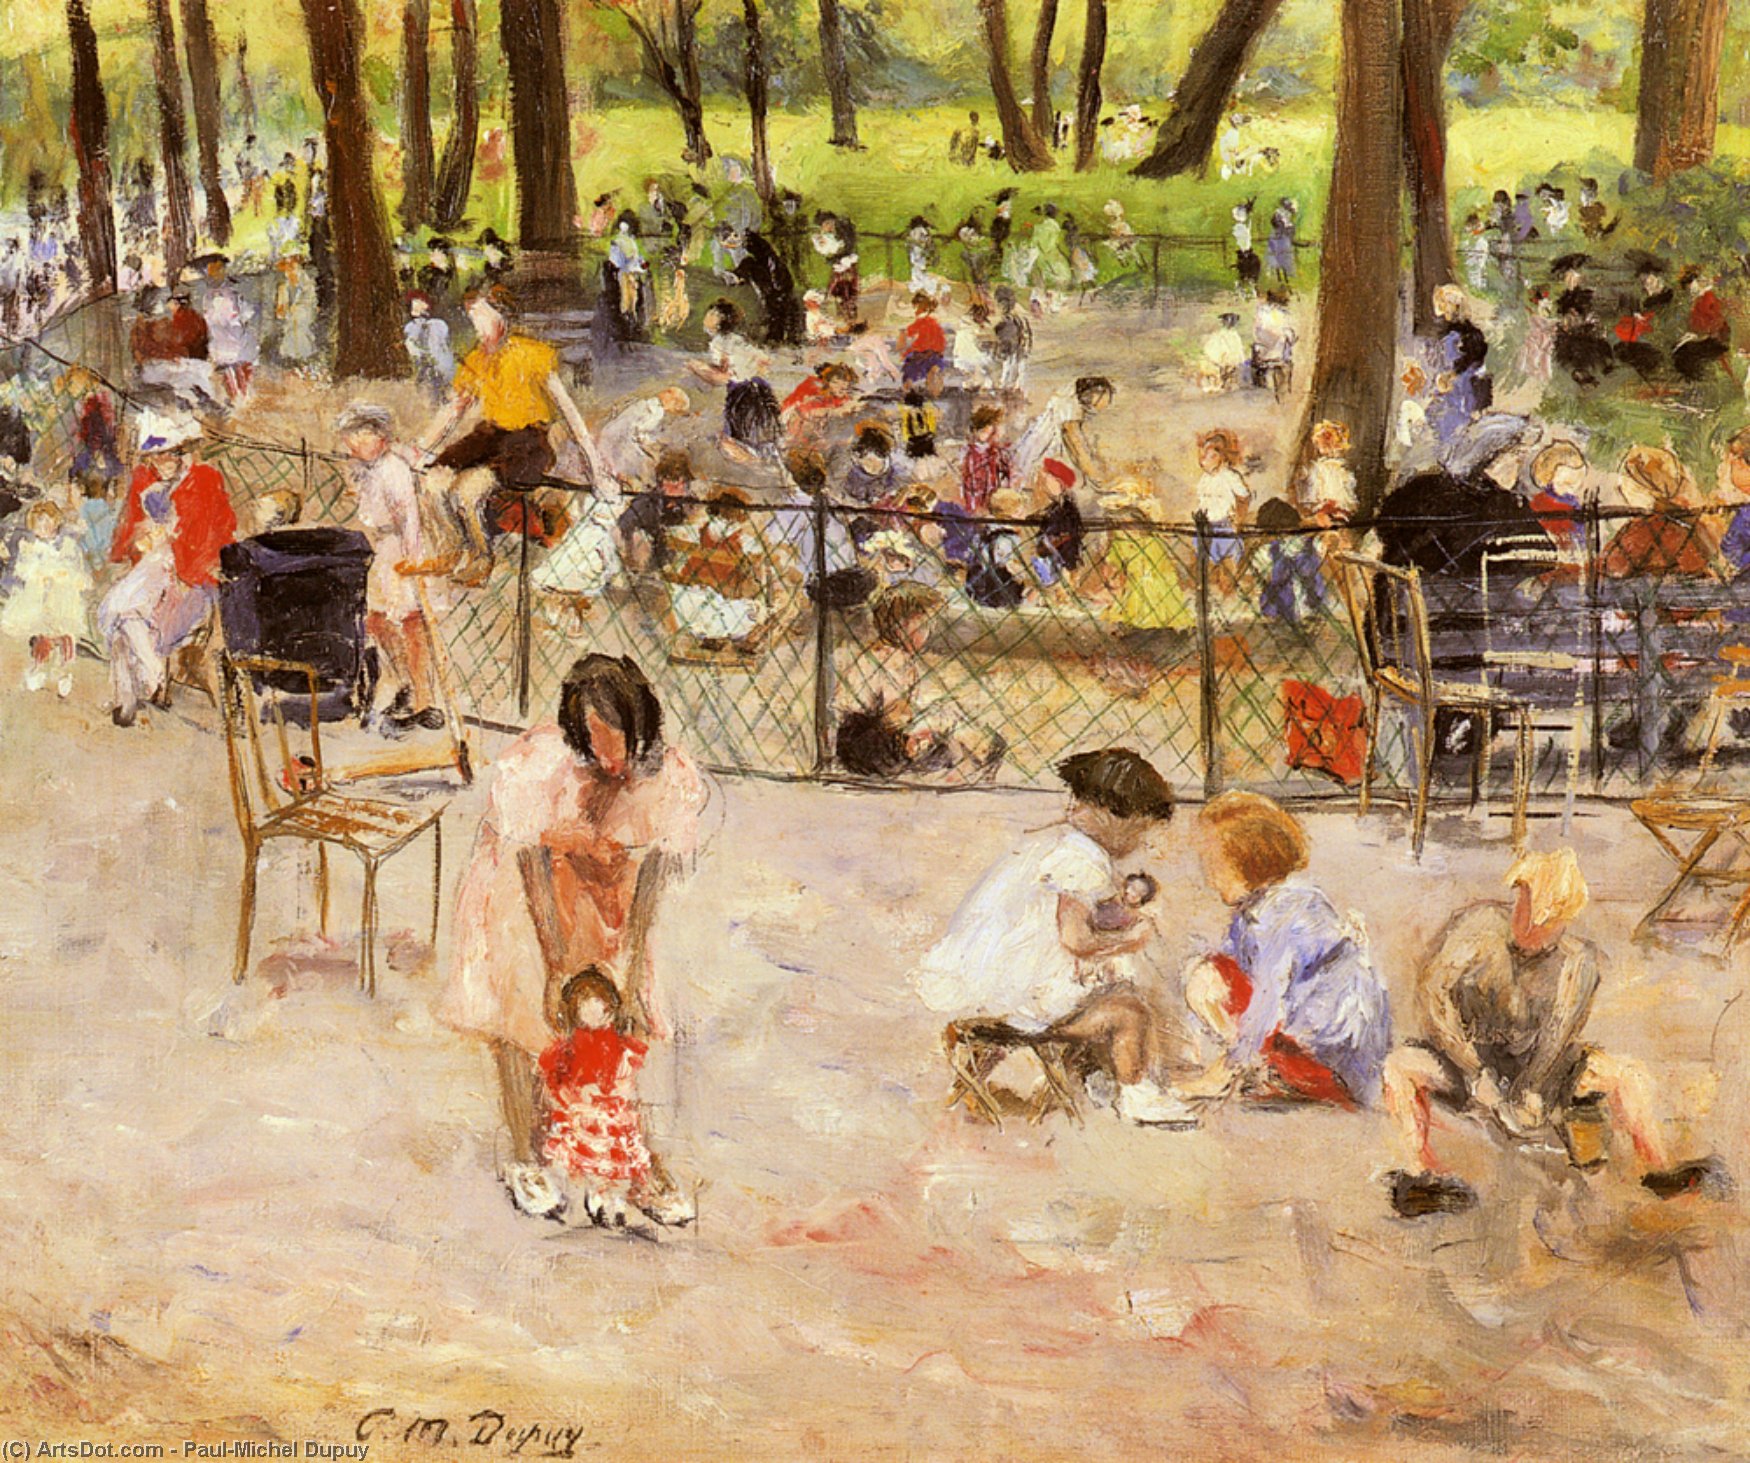 Order Oil Painting Replica Le parc monceau a paris by Paul-Michel Dupuy (1869-1949) | ArtsDot.com